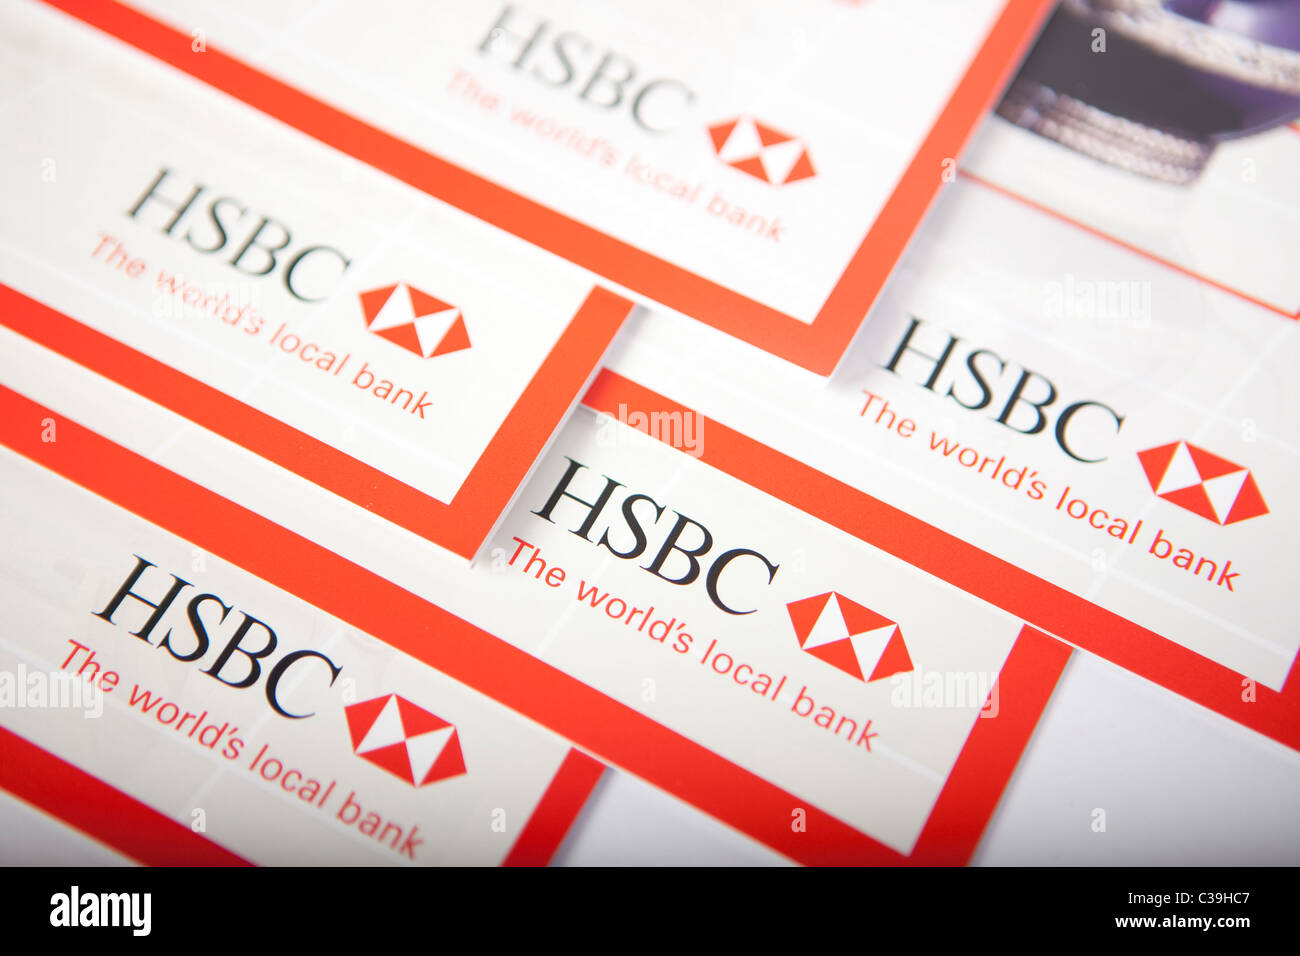 Figurative image of HSBC Holdings plc. Stock Photo